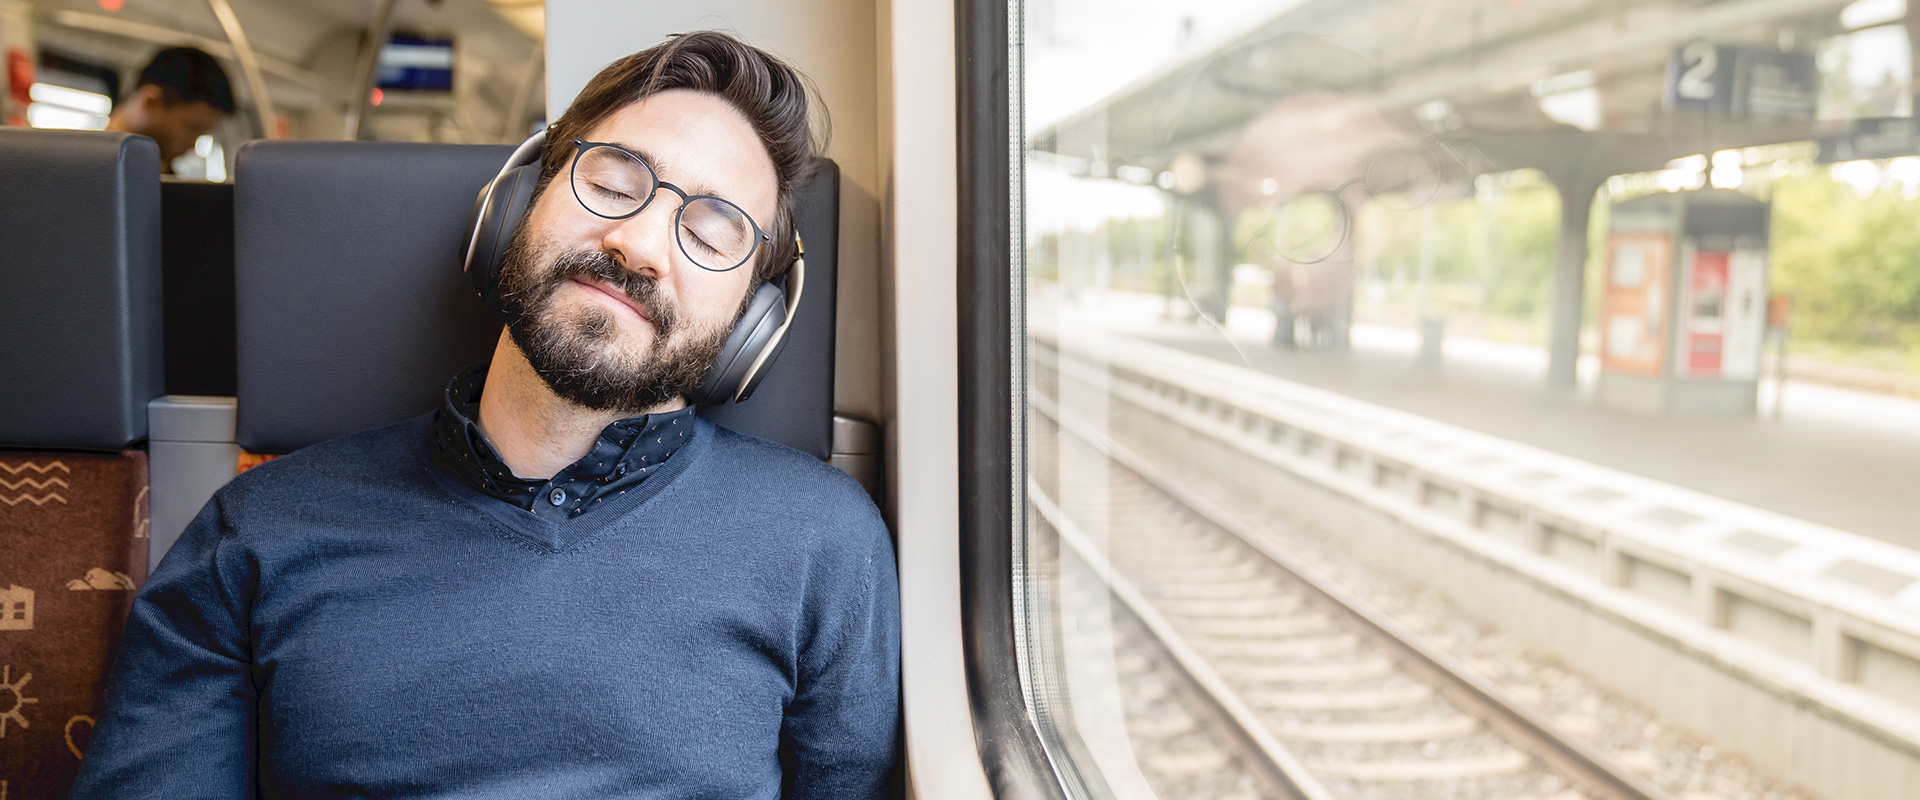 Ein junger Mann entspannt mit geschlossene Augen und Kopfhörern auf den Ohren im Zug